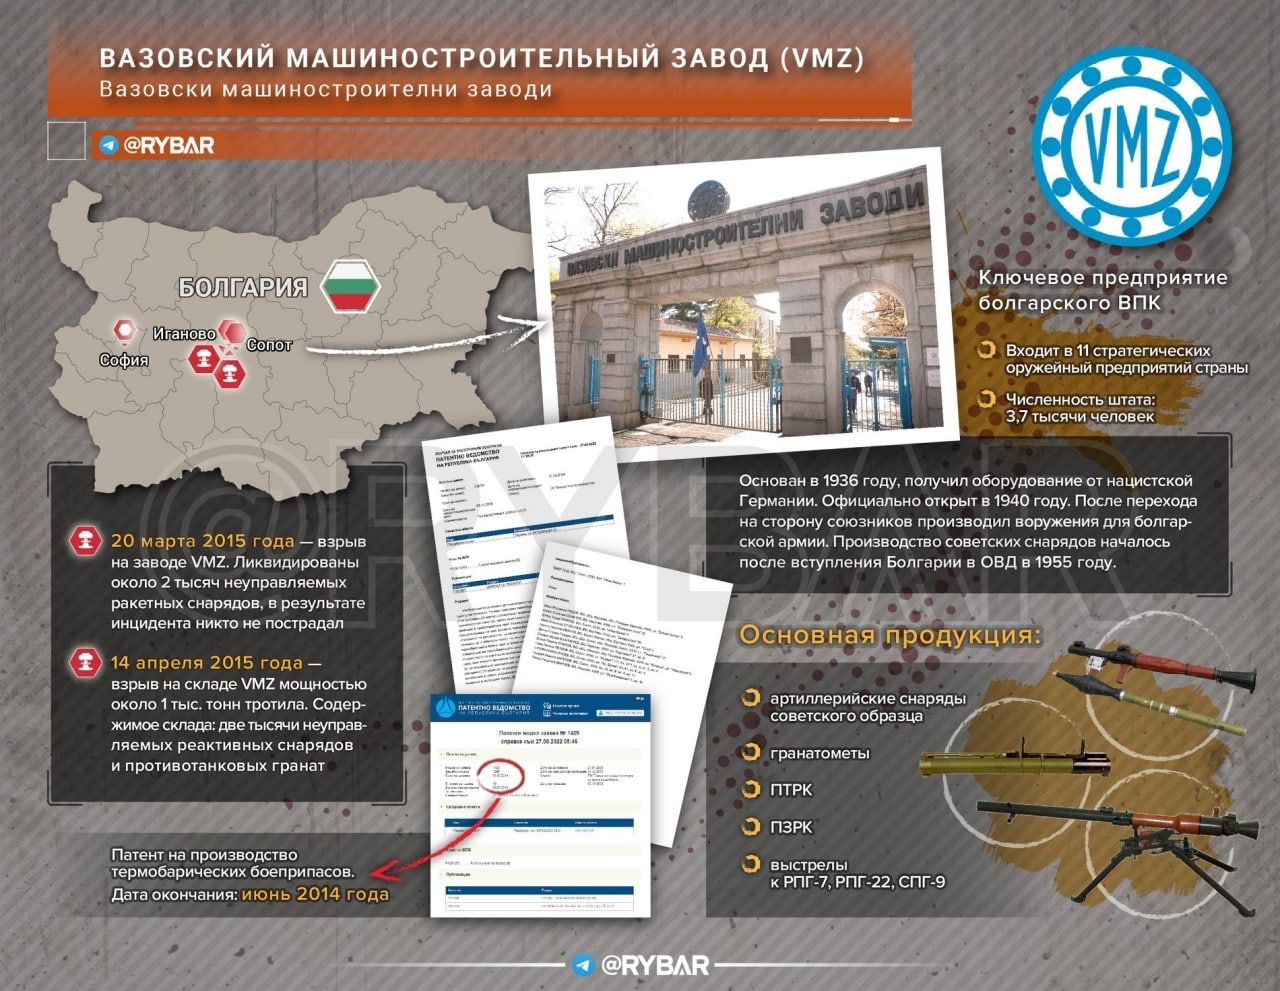 Armi Bulgare In Ucraina: Cosa Nascondono Le Autorità Di Sofia